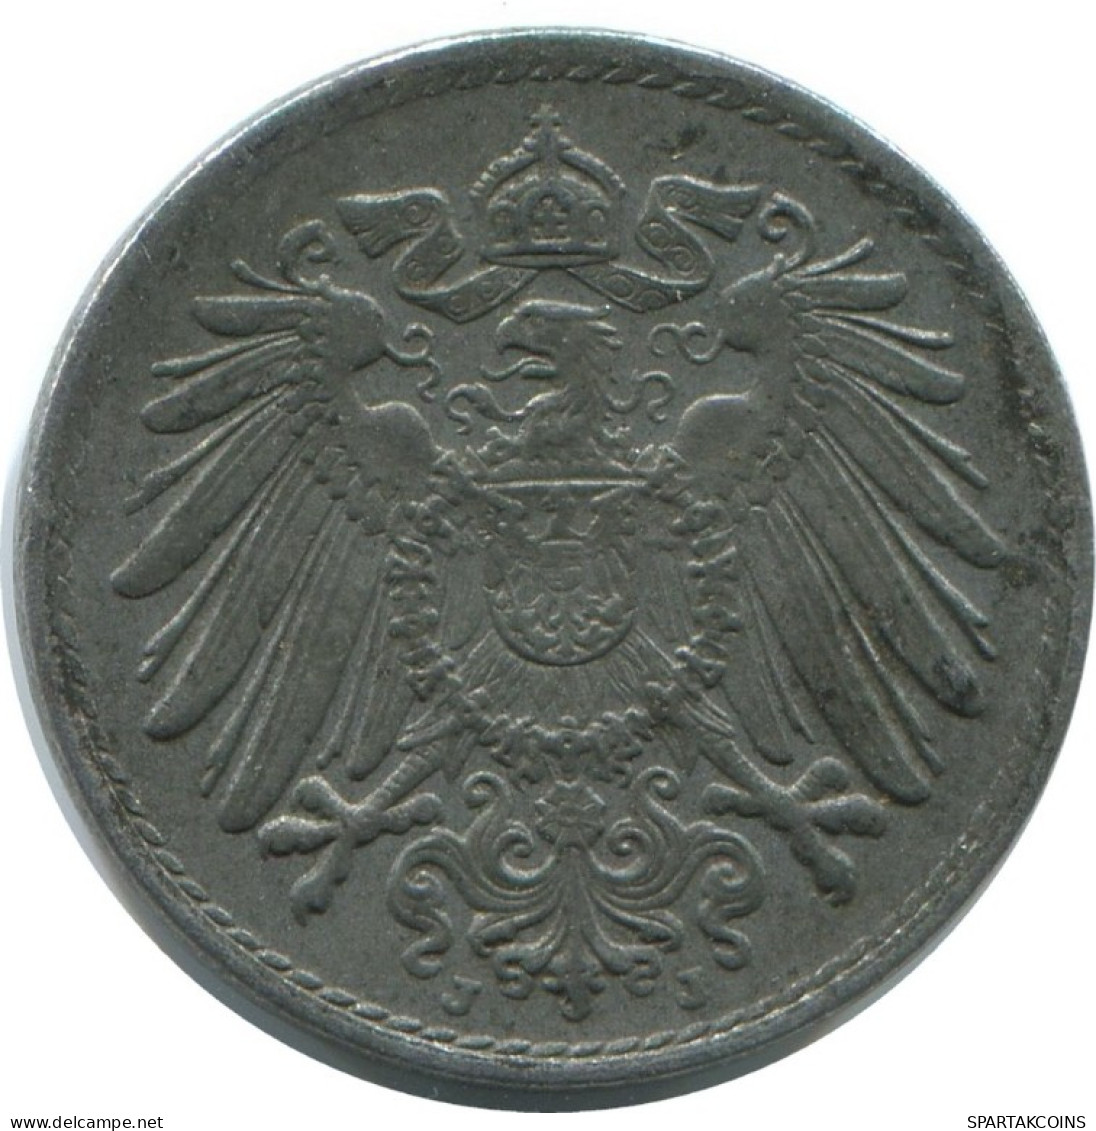 5 PFENNIG 1920 J GERMANY Coin #AE305.U.A - 5 Rentenpfennig & 5 Reichspfennig